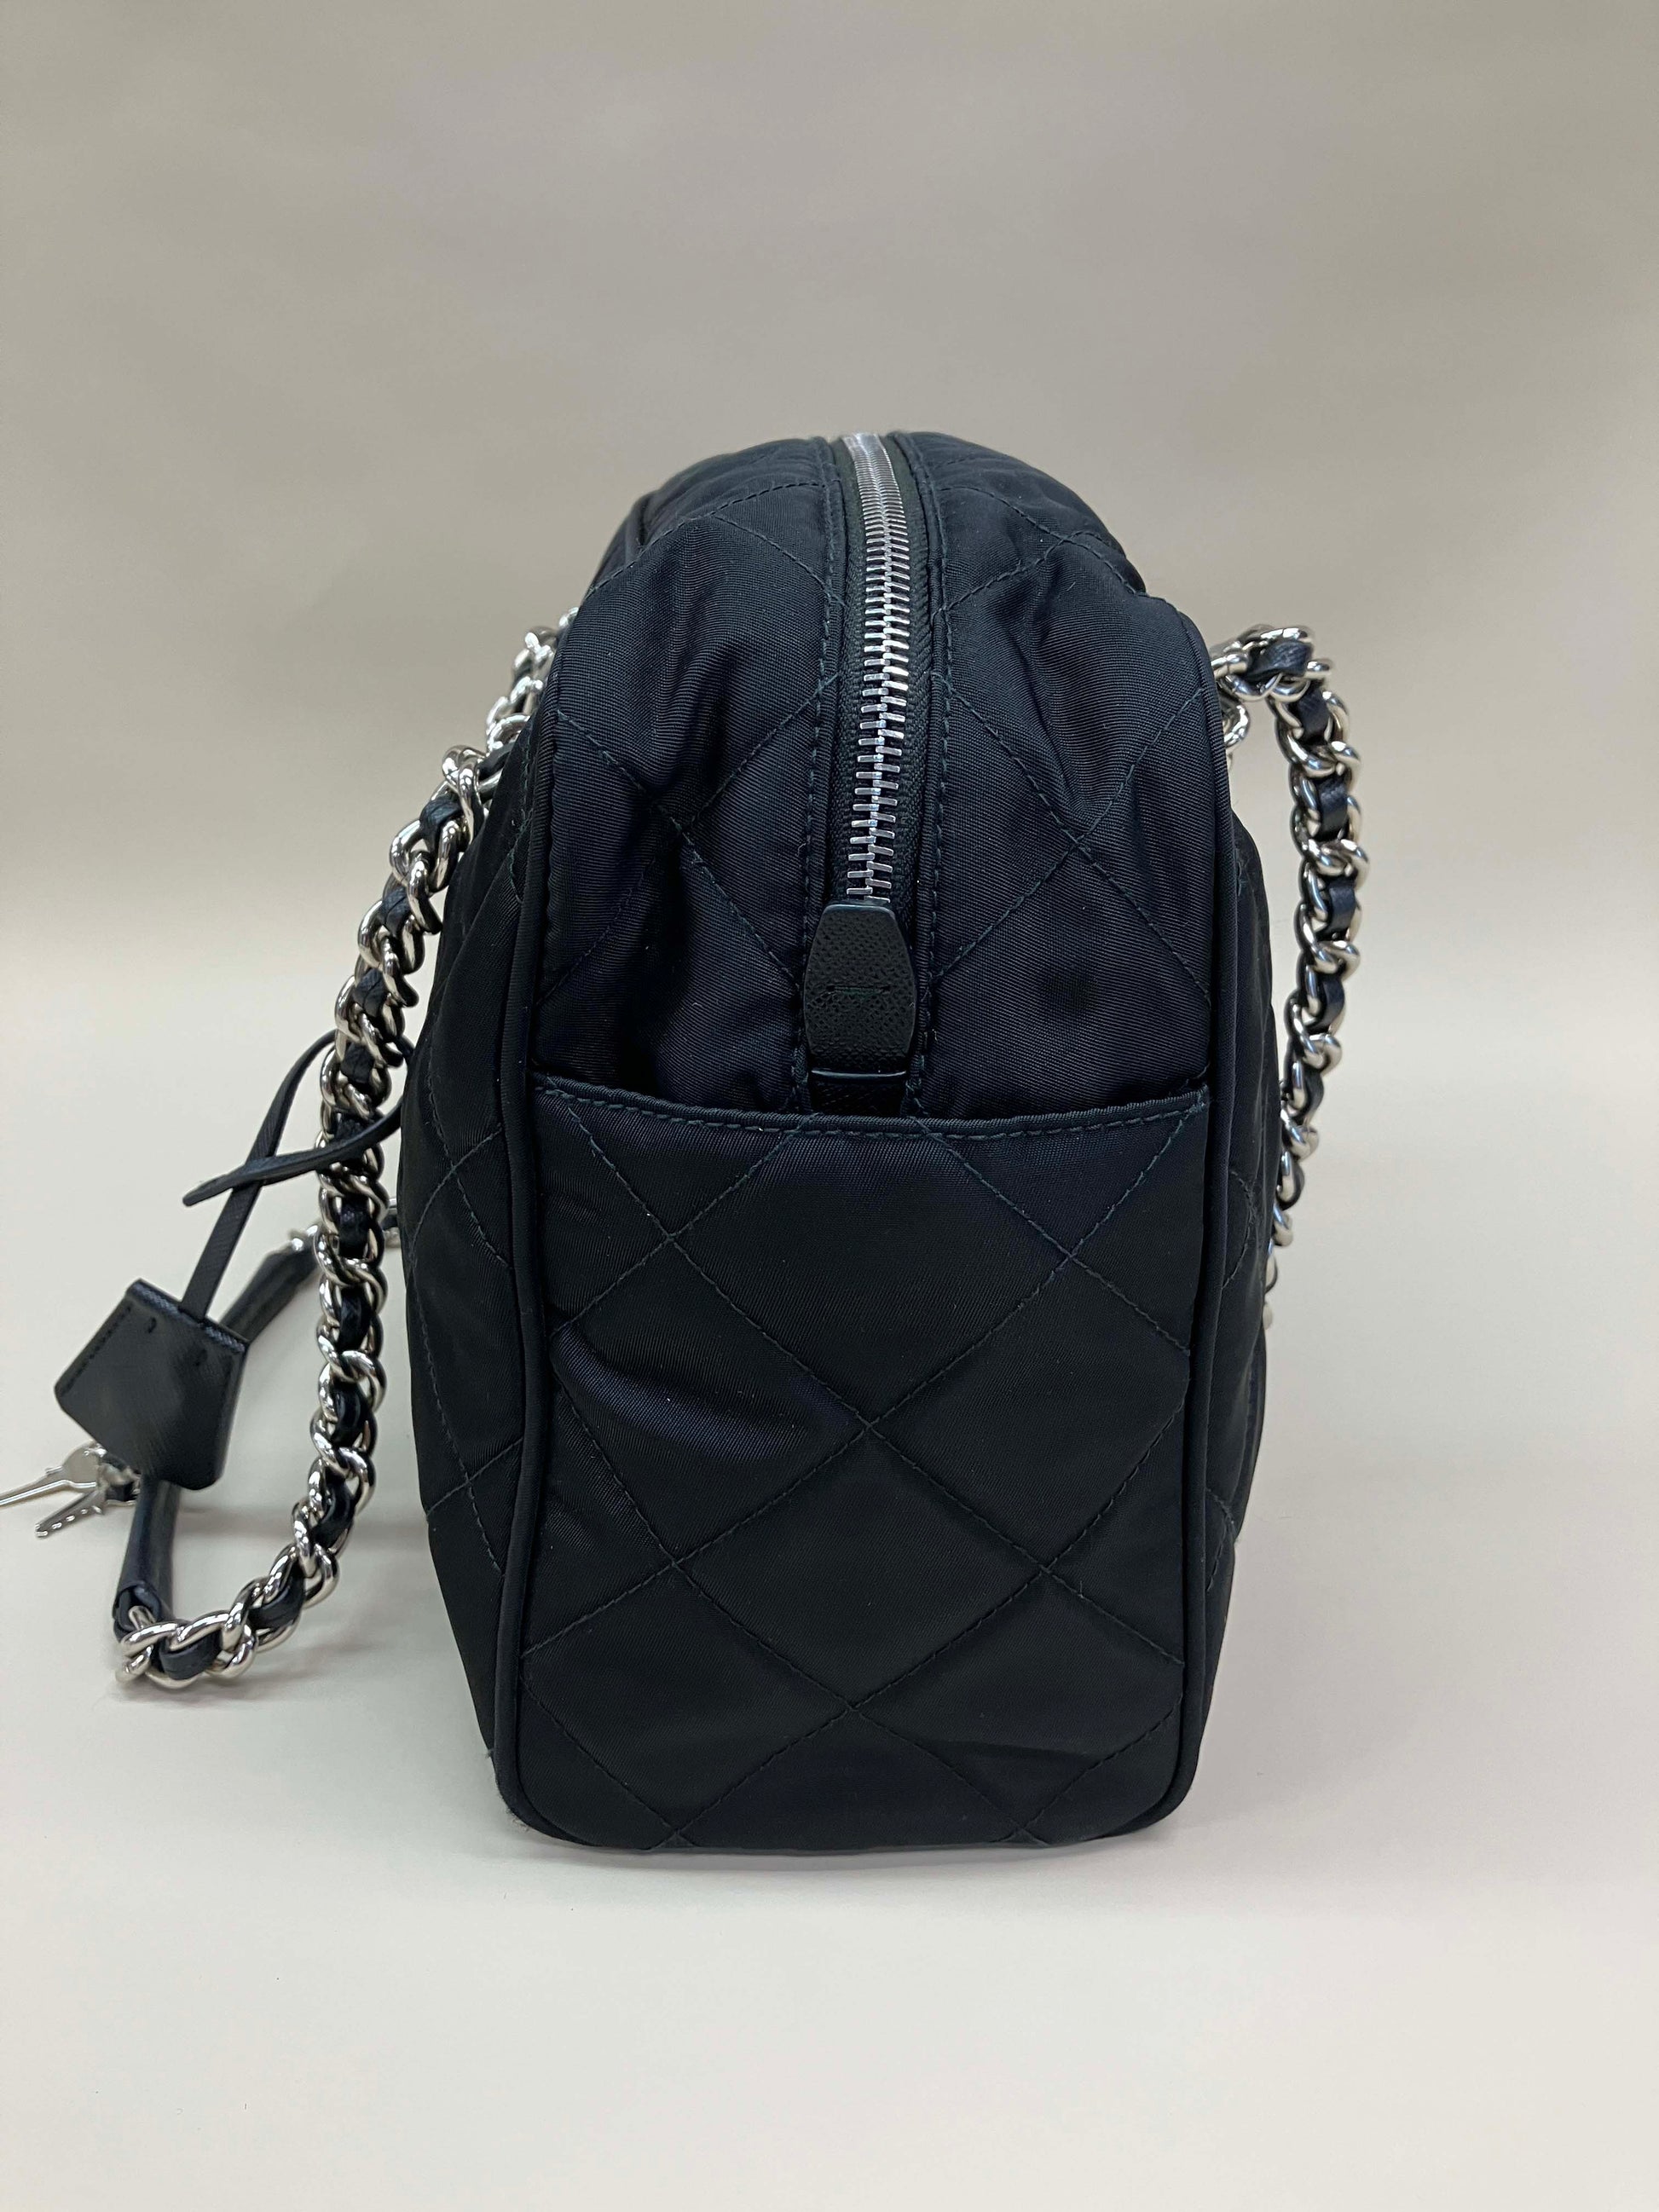 PRADA Saffiano Tessuto Nylon Chain Shoulder Bag Black 1303556